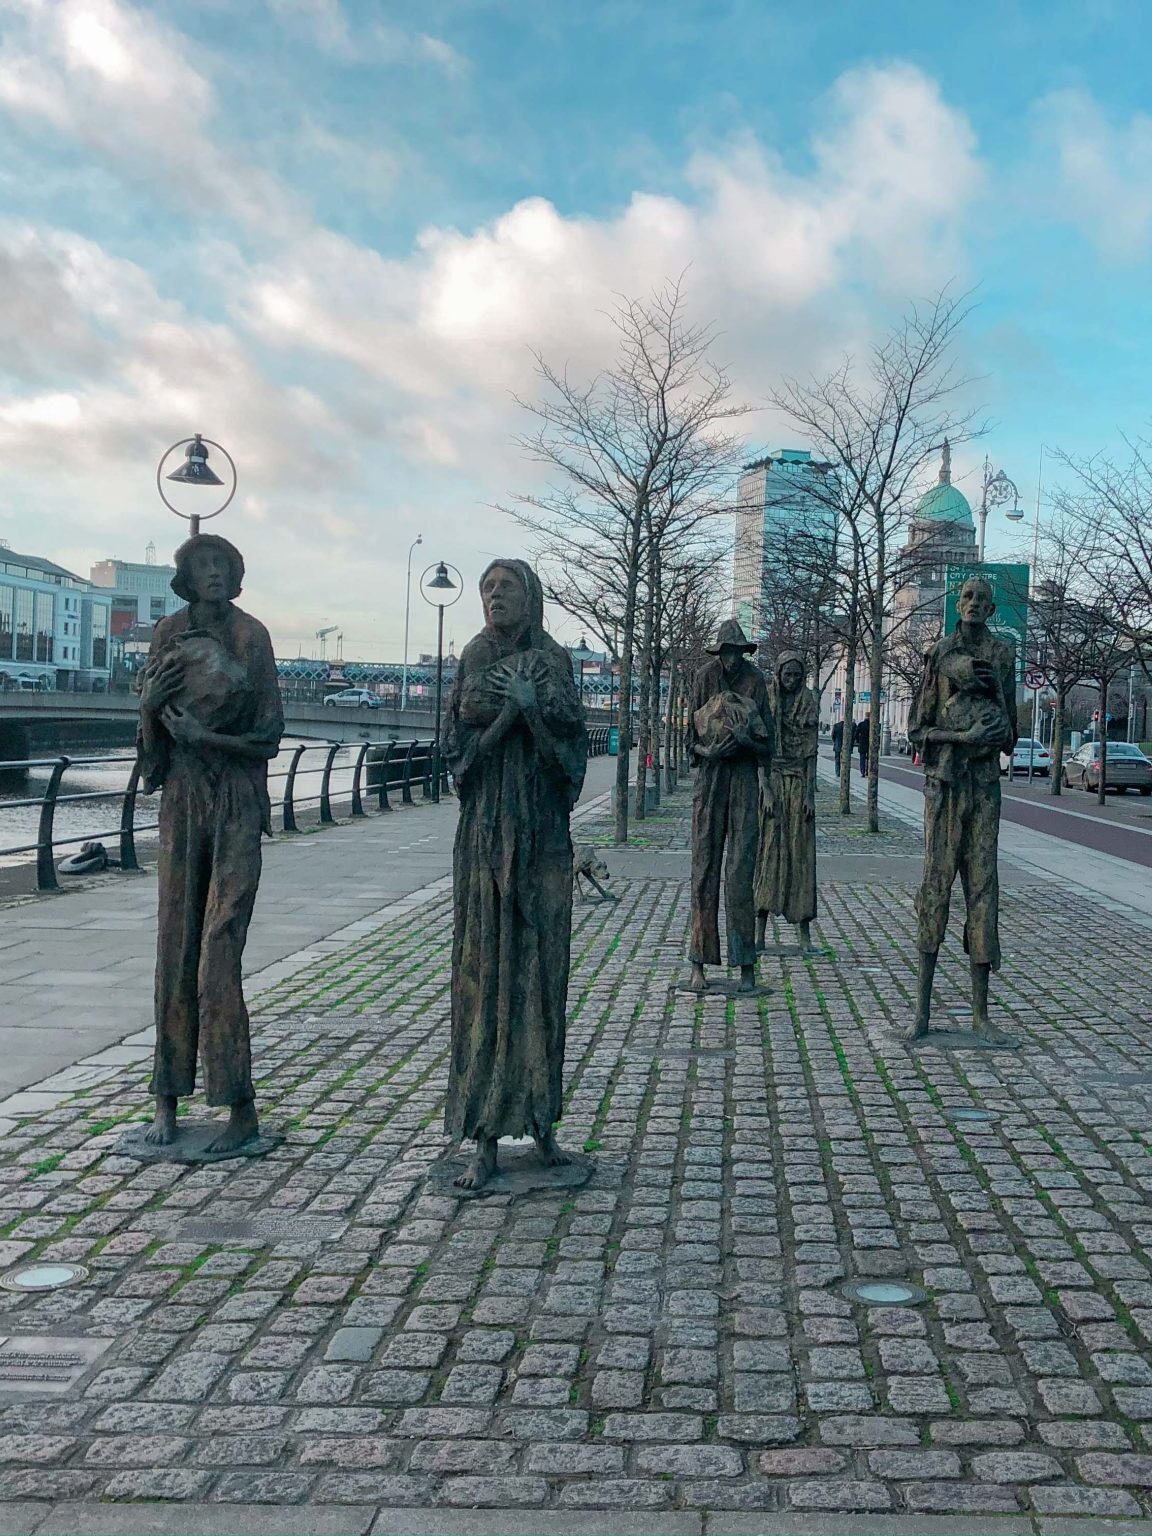 Famine Memorial in North Dock Dublin